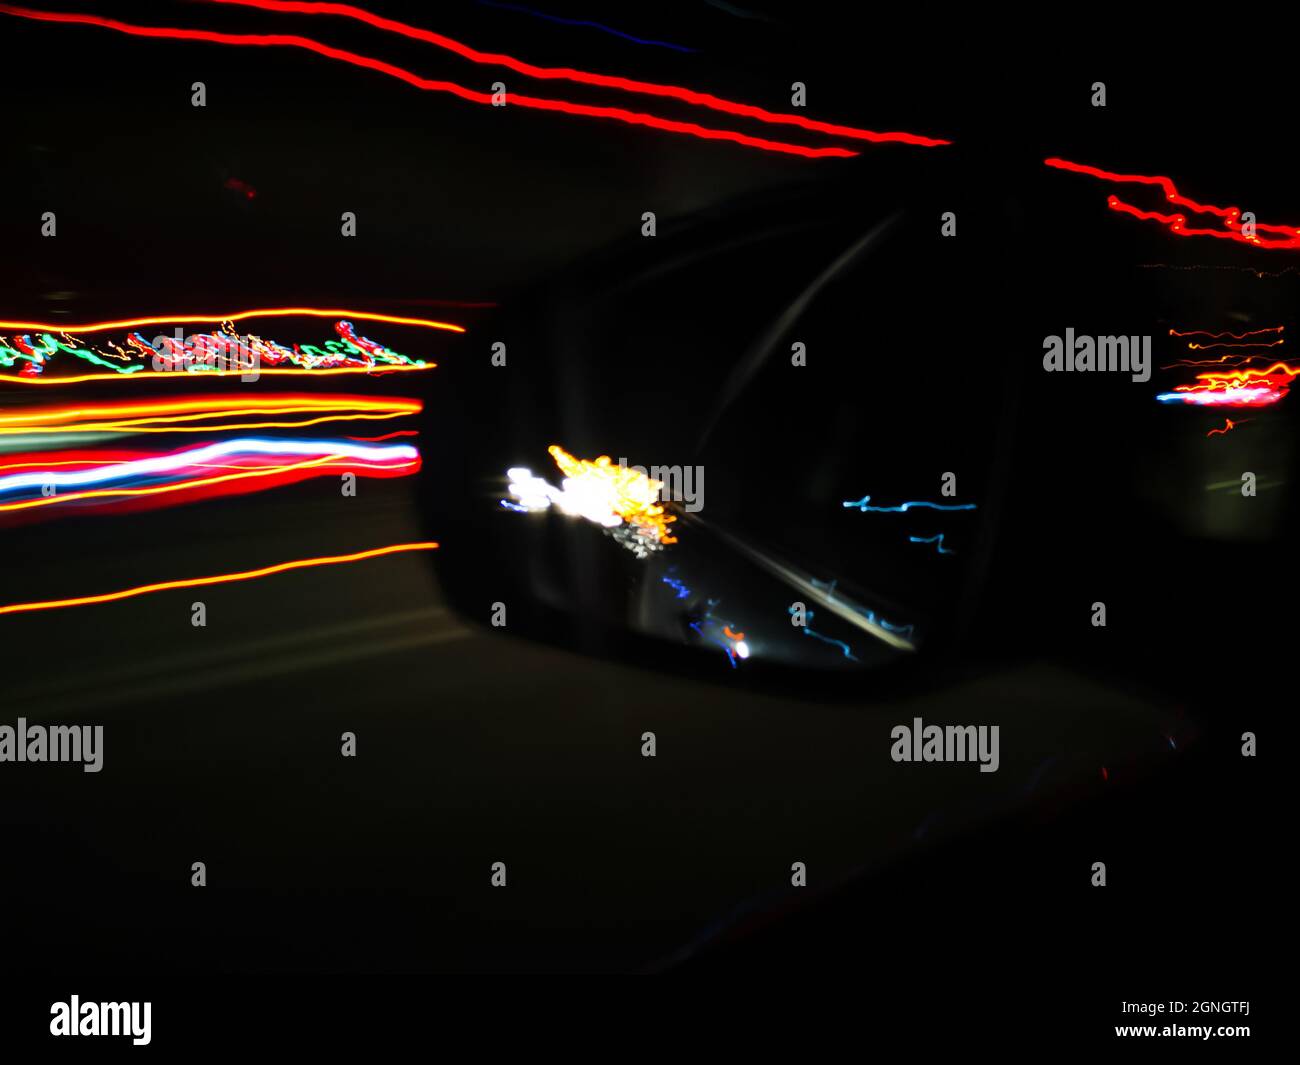 Les voies lumineuses bleues, orange et rouges au néon filent sur une longue exposition de la voiture à grande vitesse dans la ville nocturne et son reflet dans le rétroviseur Banque D'Images